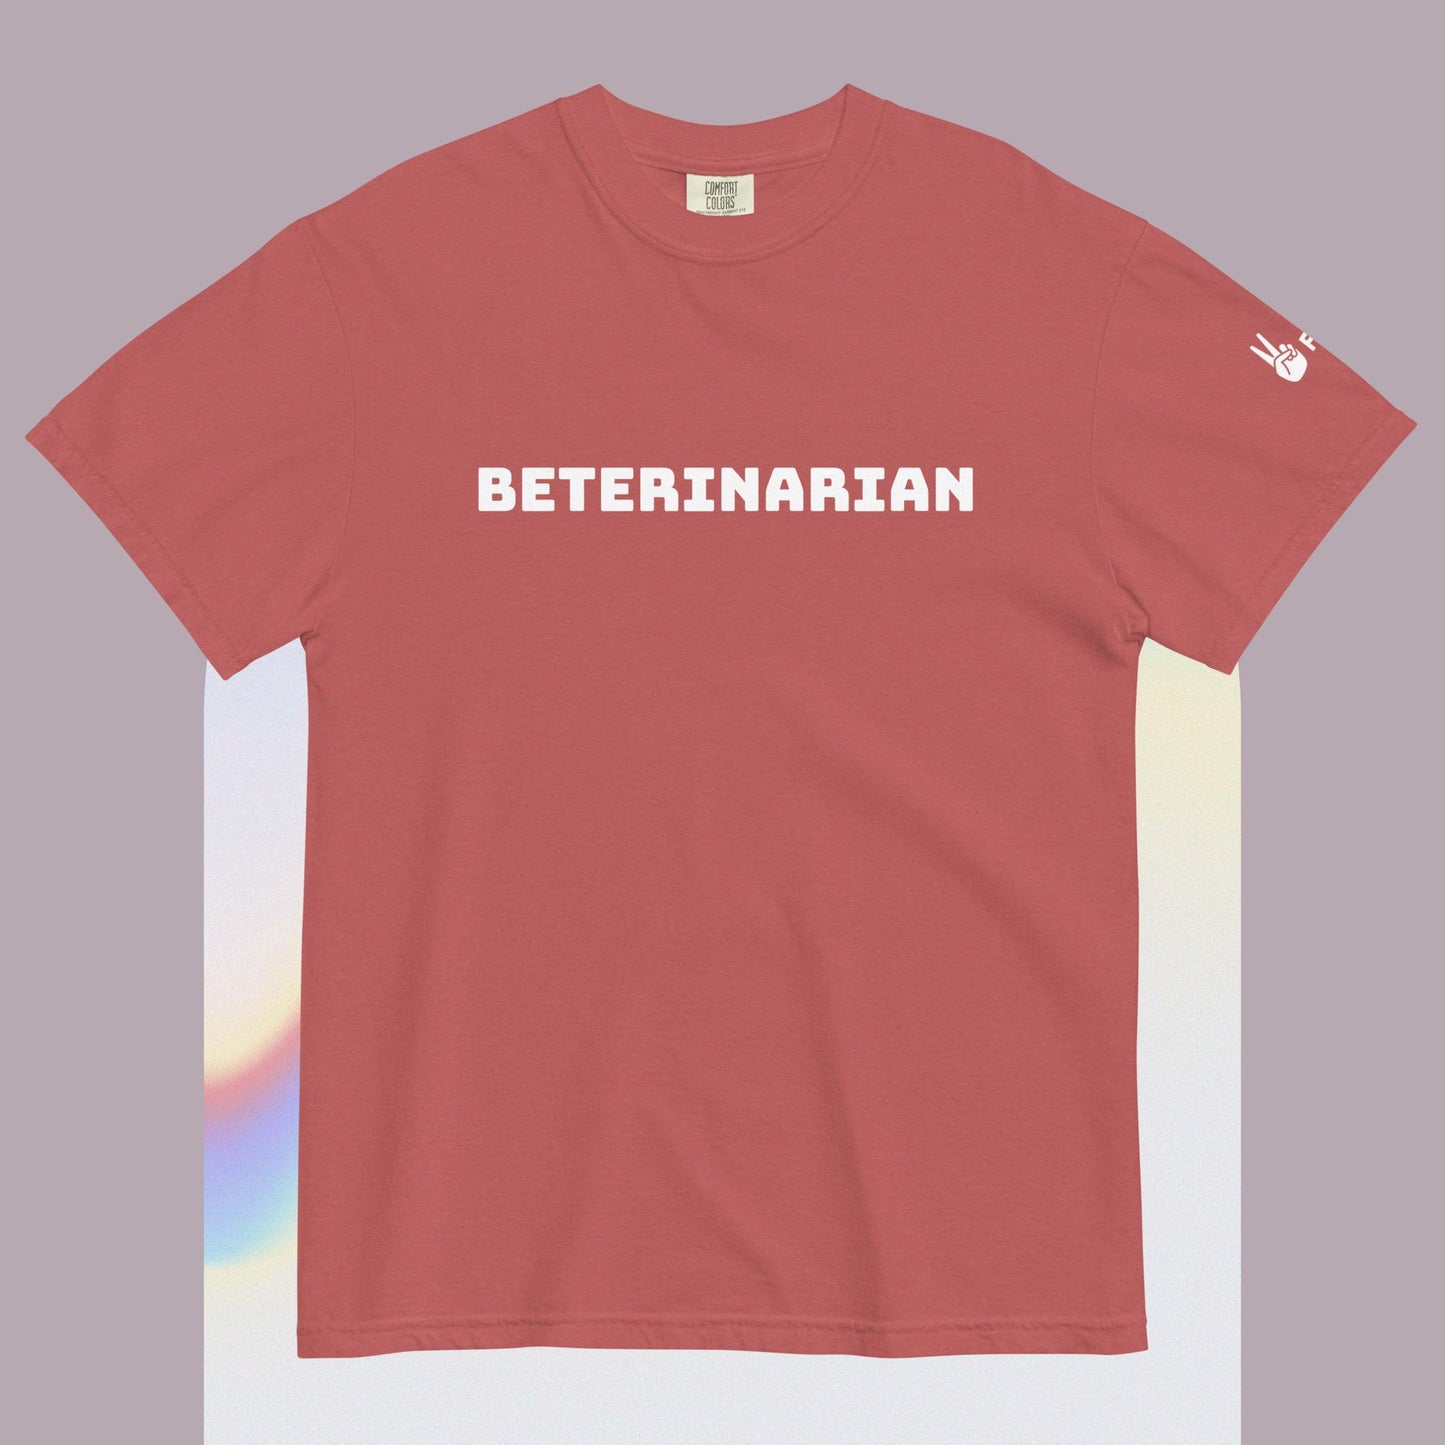 Bet-erinarian Shirt